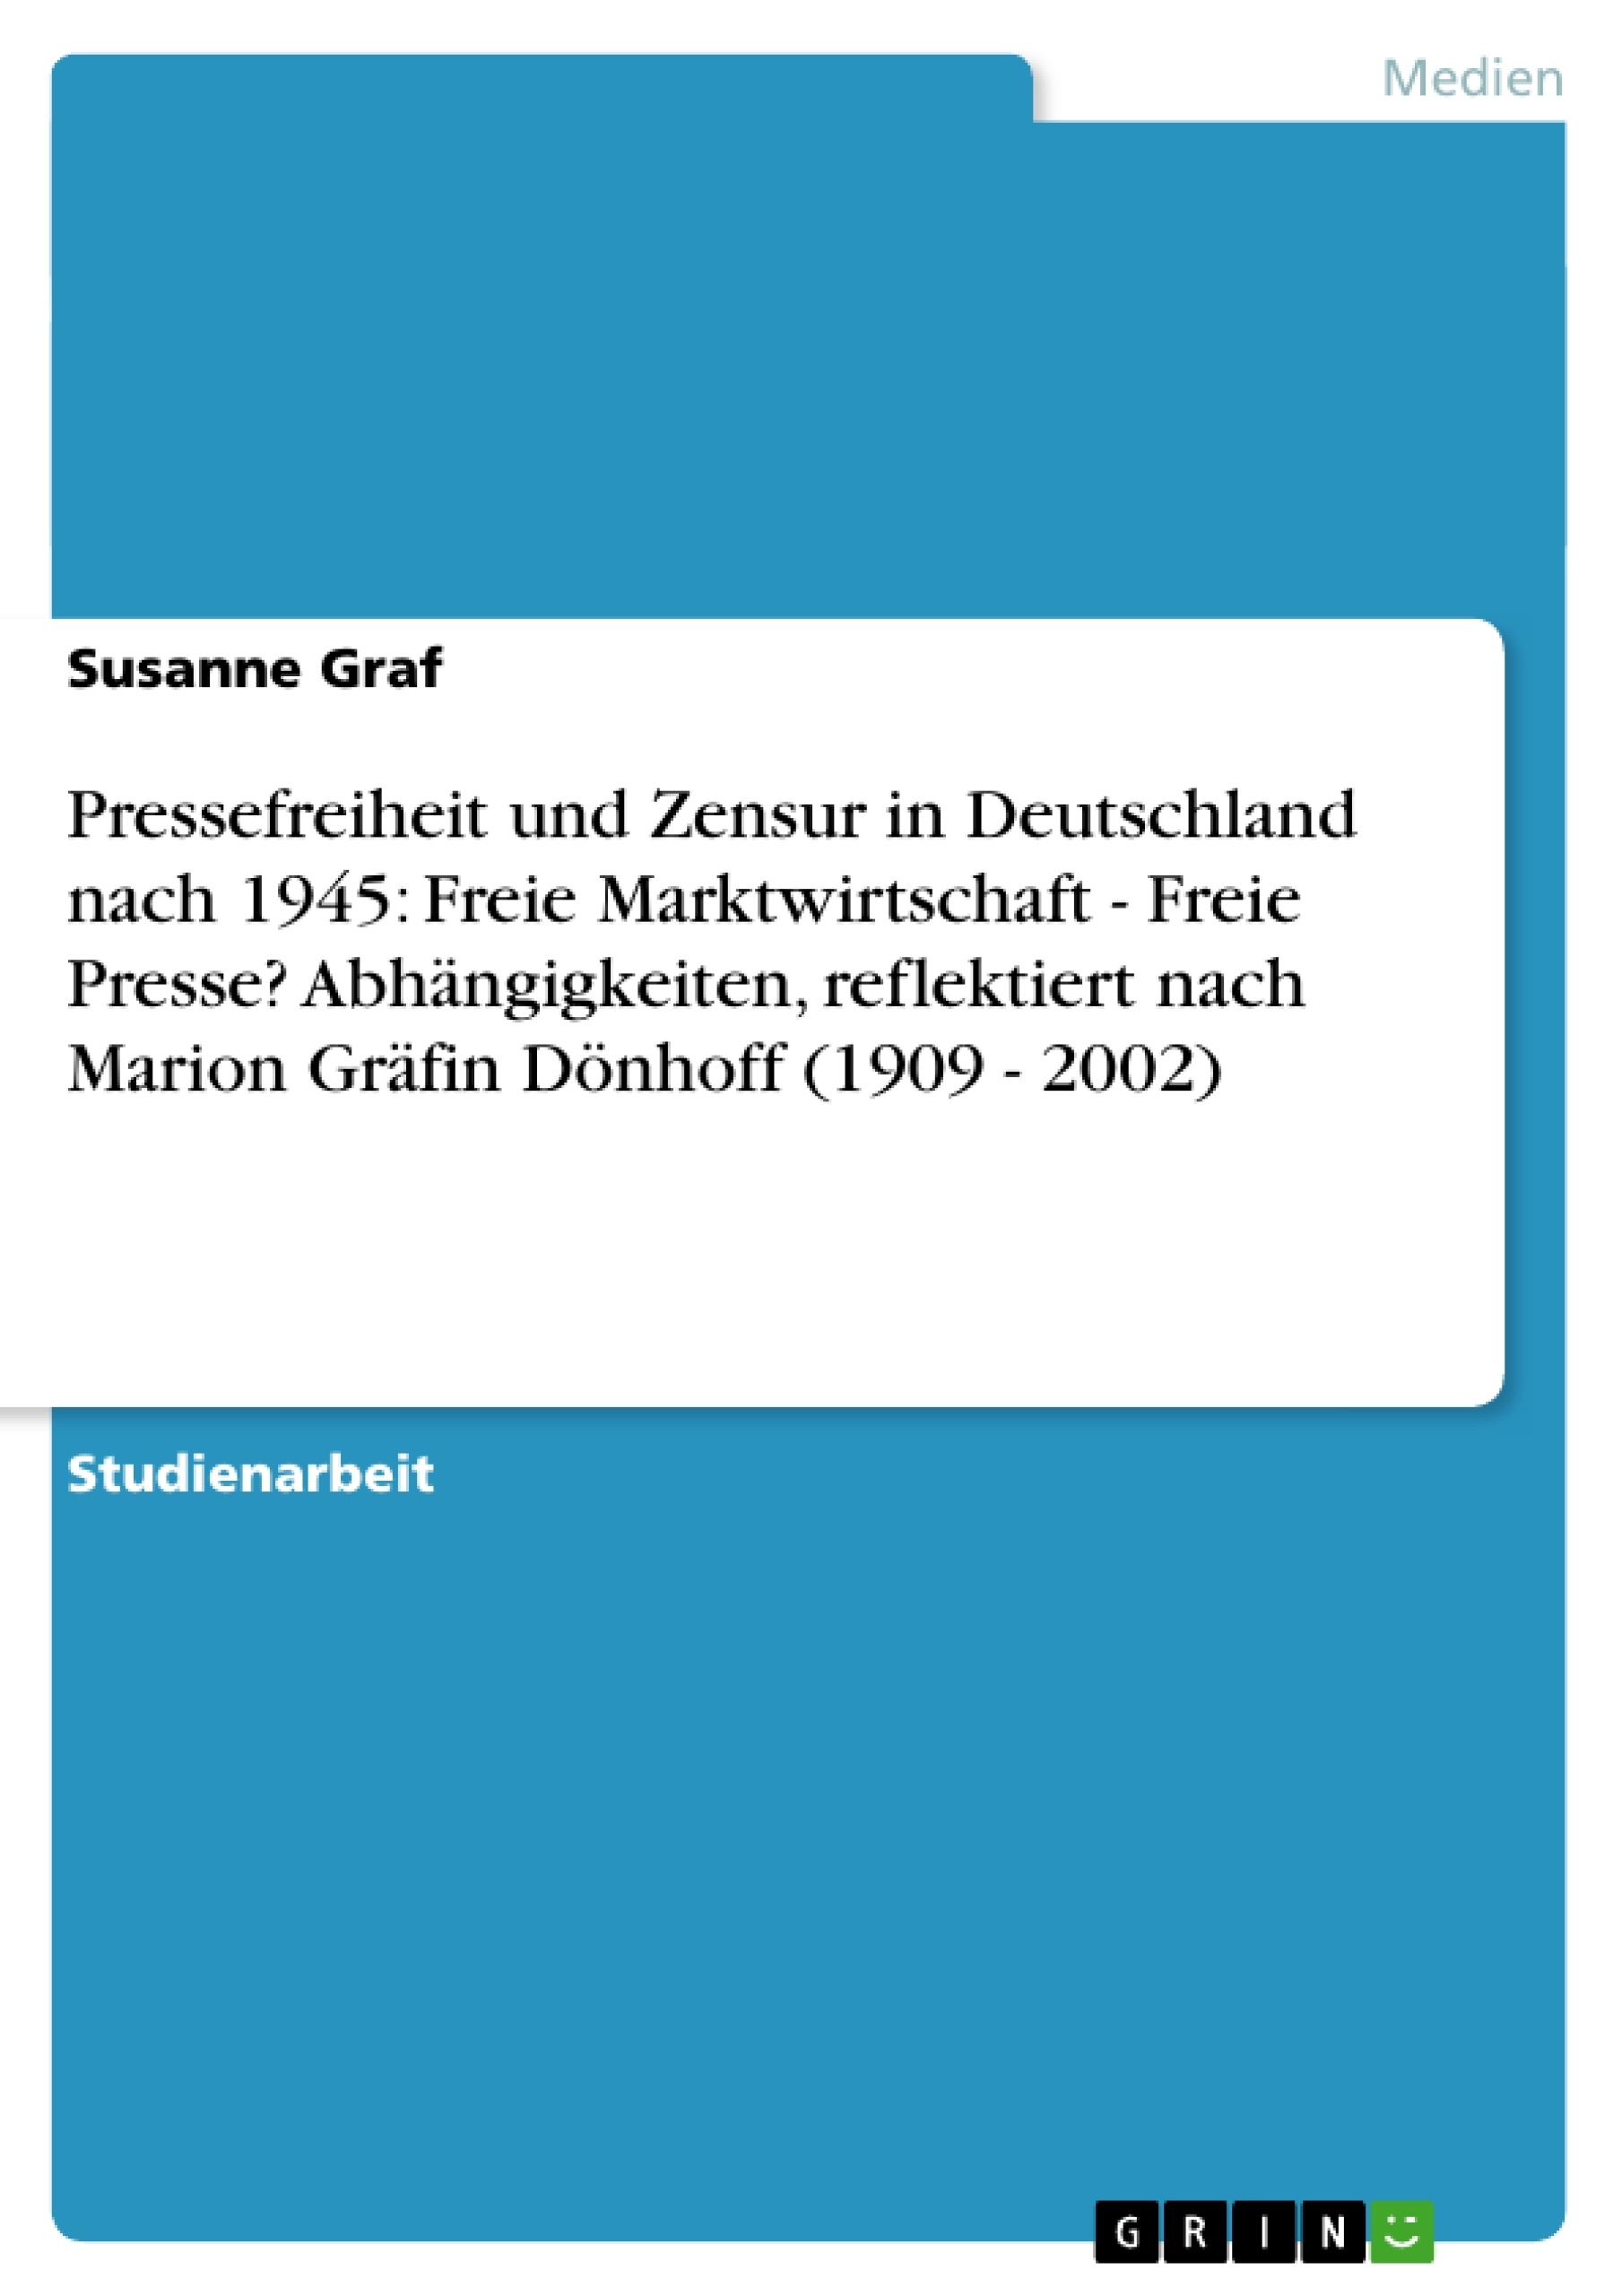 Titel: Pressefreiheit und Zensur in Deutschland nach 1945: Freie Marktwirtschaft - Freie Presse? Abhängigkeiten, reflektiert nach Marion Gräfin Dönhoff (1909 - 2002)